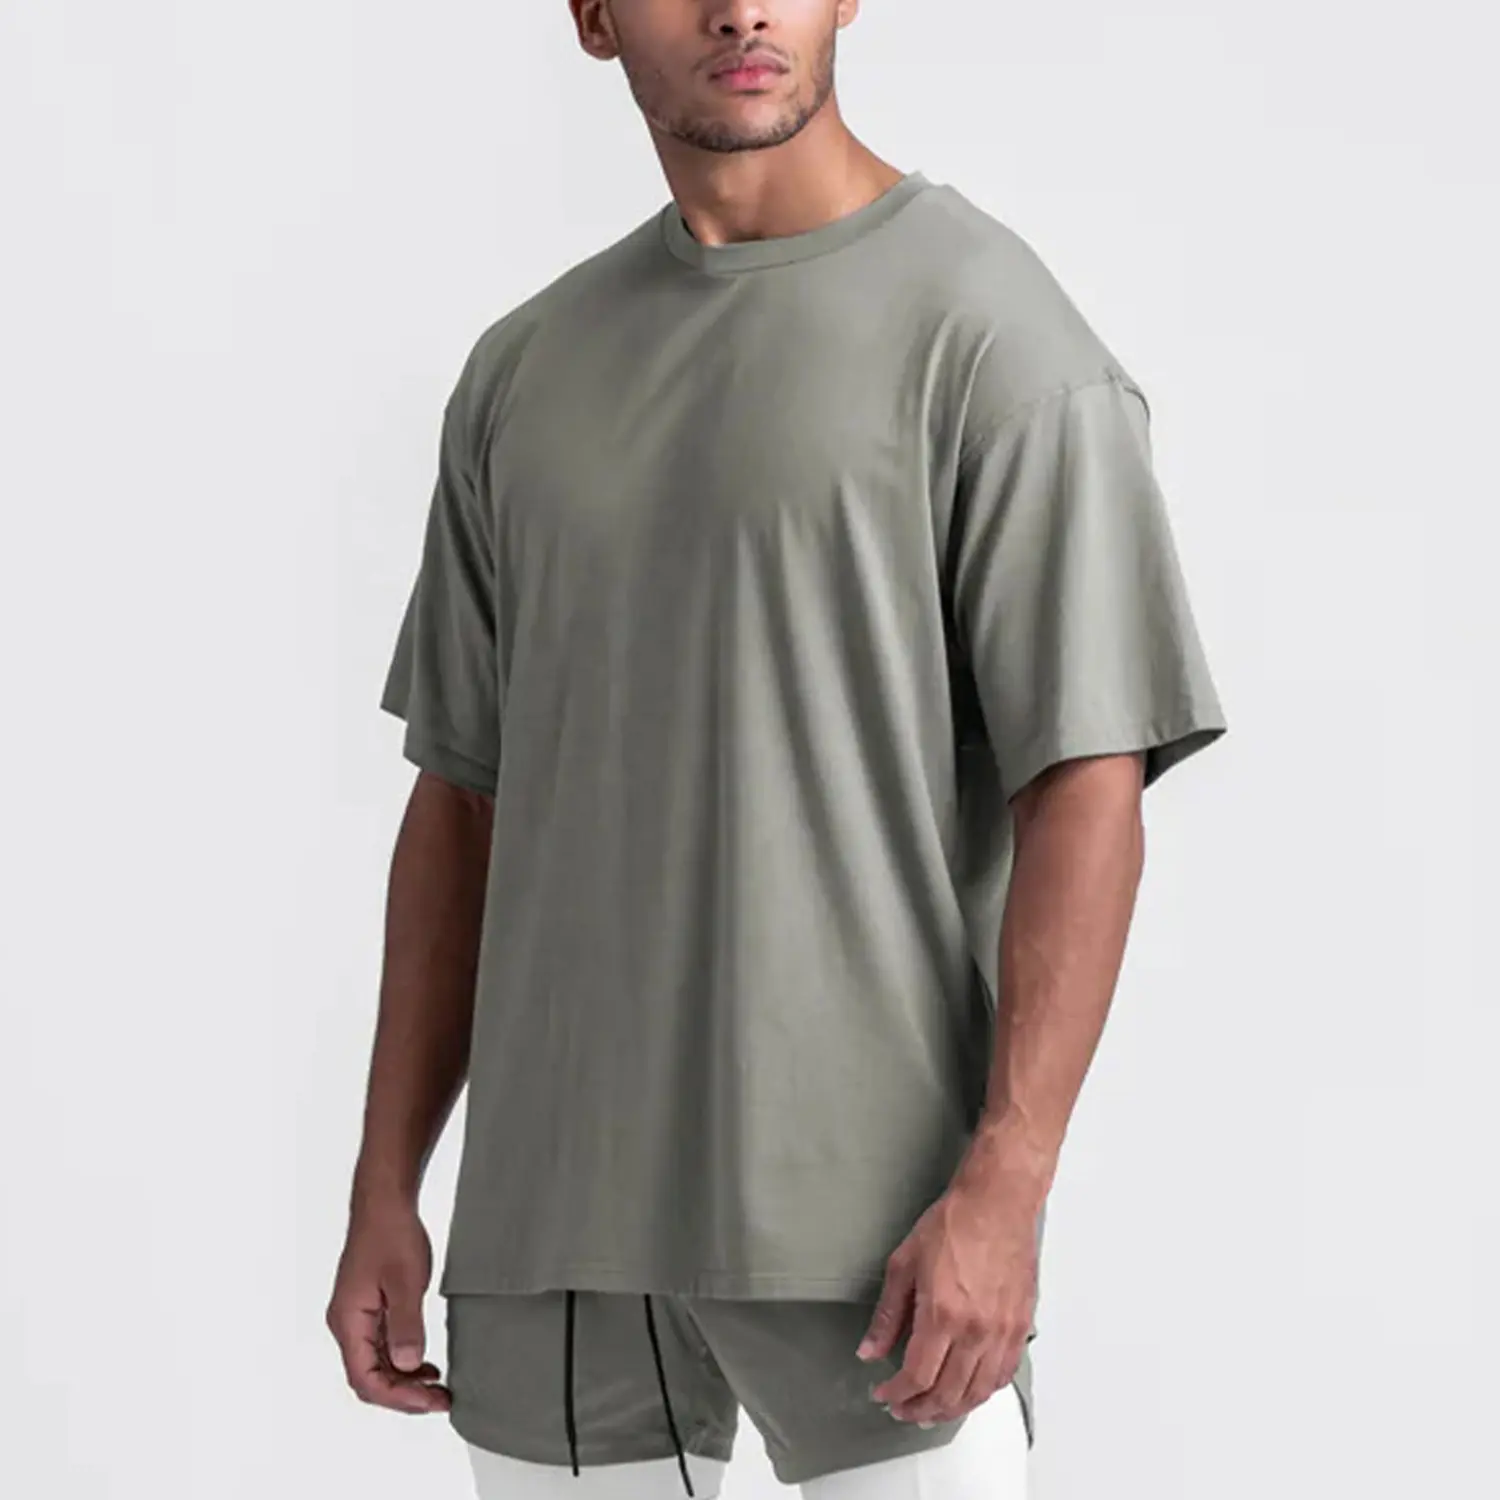 Verano suelto sólido algodón deportes hombres manga corta Split Bottom Fitness Camiseta cuello redondo secado rápido camisetas